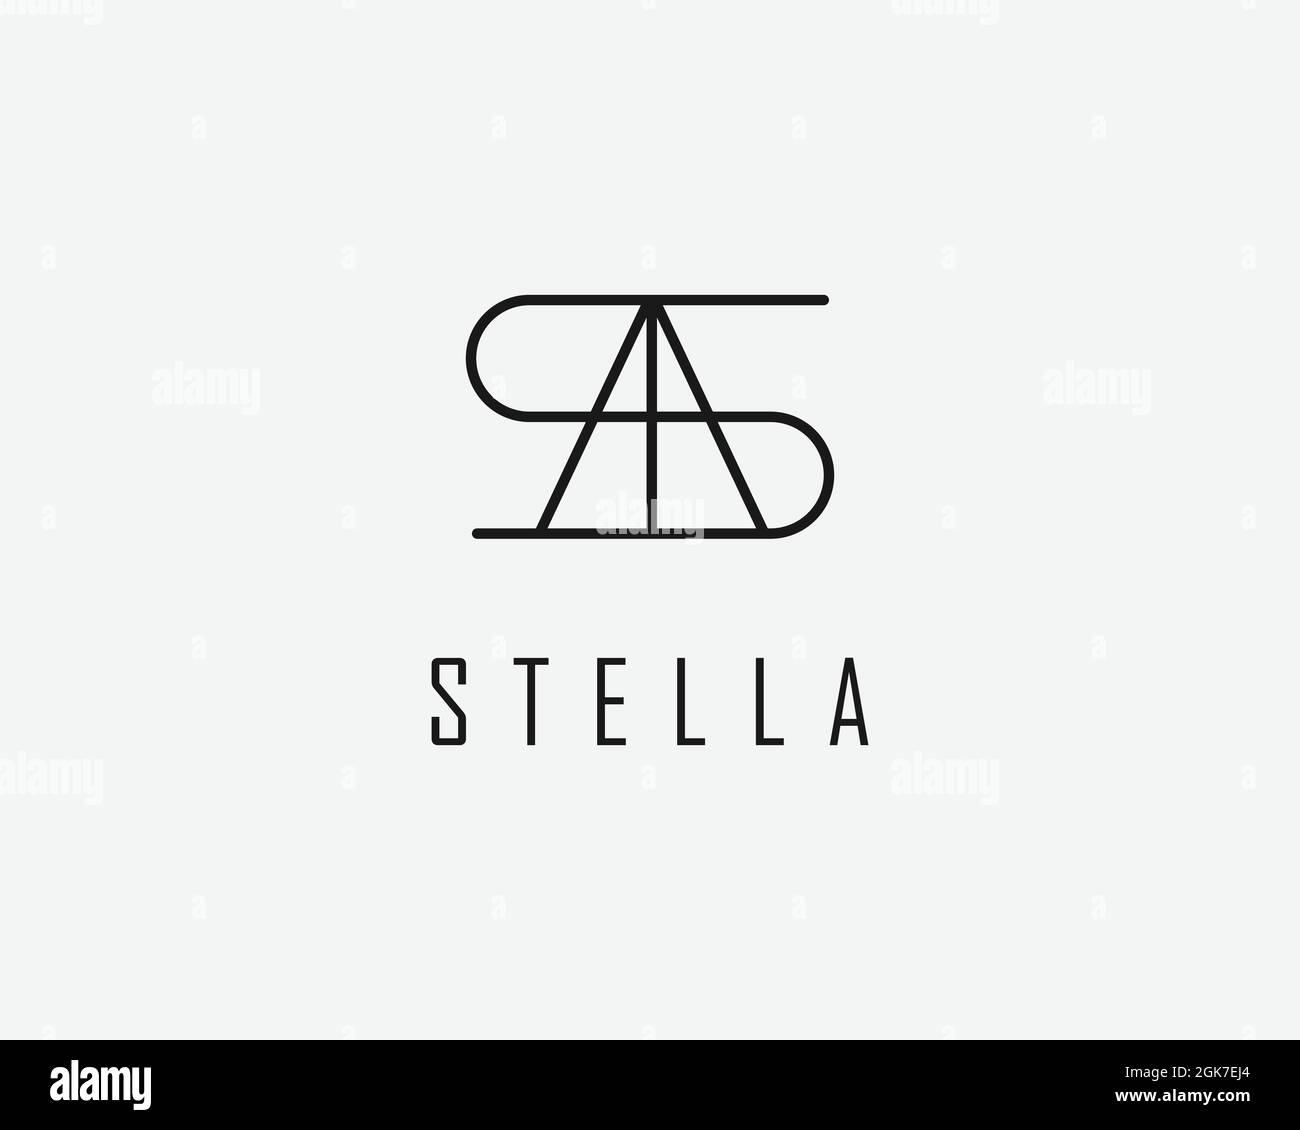 logo name Stella usable logo design for private logo, business name card web icon, social media icon Stock Vector